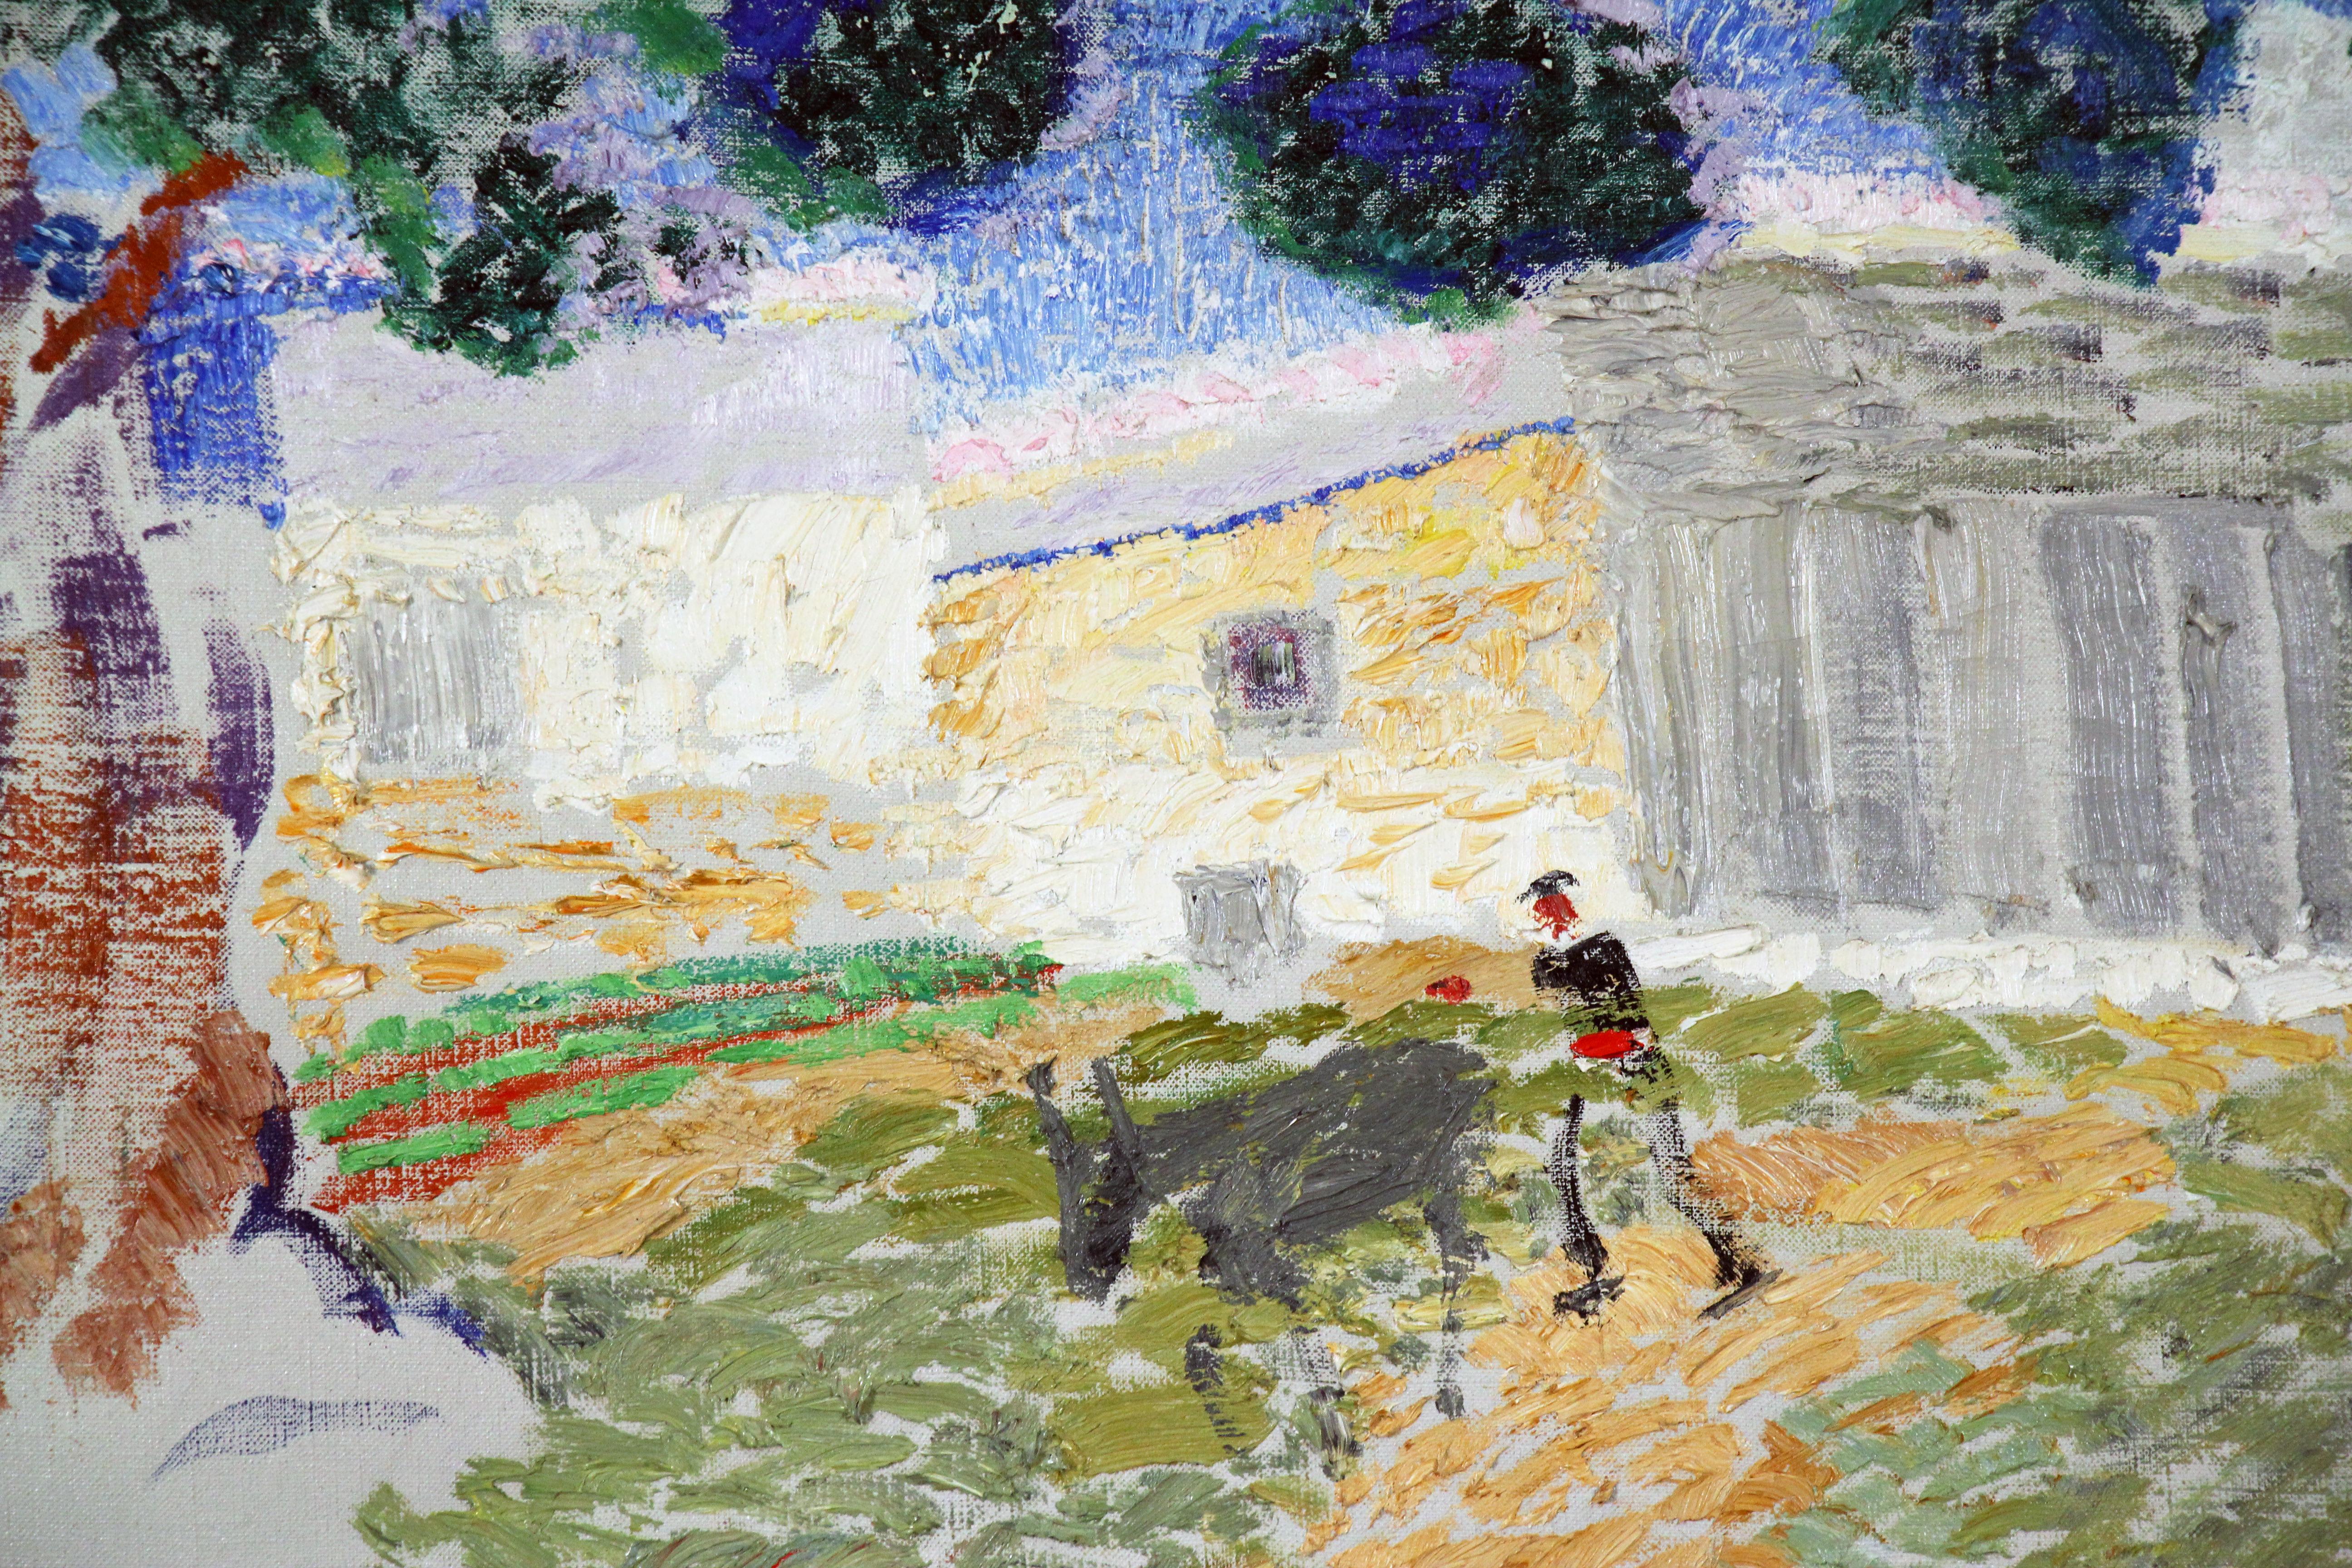 Plowing the Fields, amerikanische impressionistische Landschaft mit Figur und Tier (Amerikanischer Impressionismus), Painting, von Henry McCarter